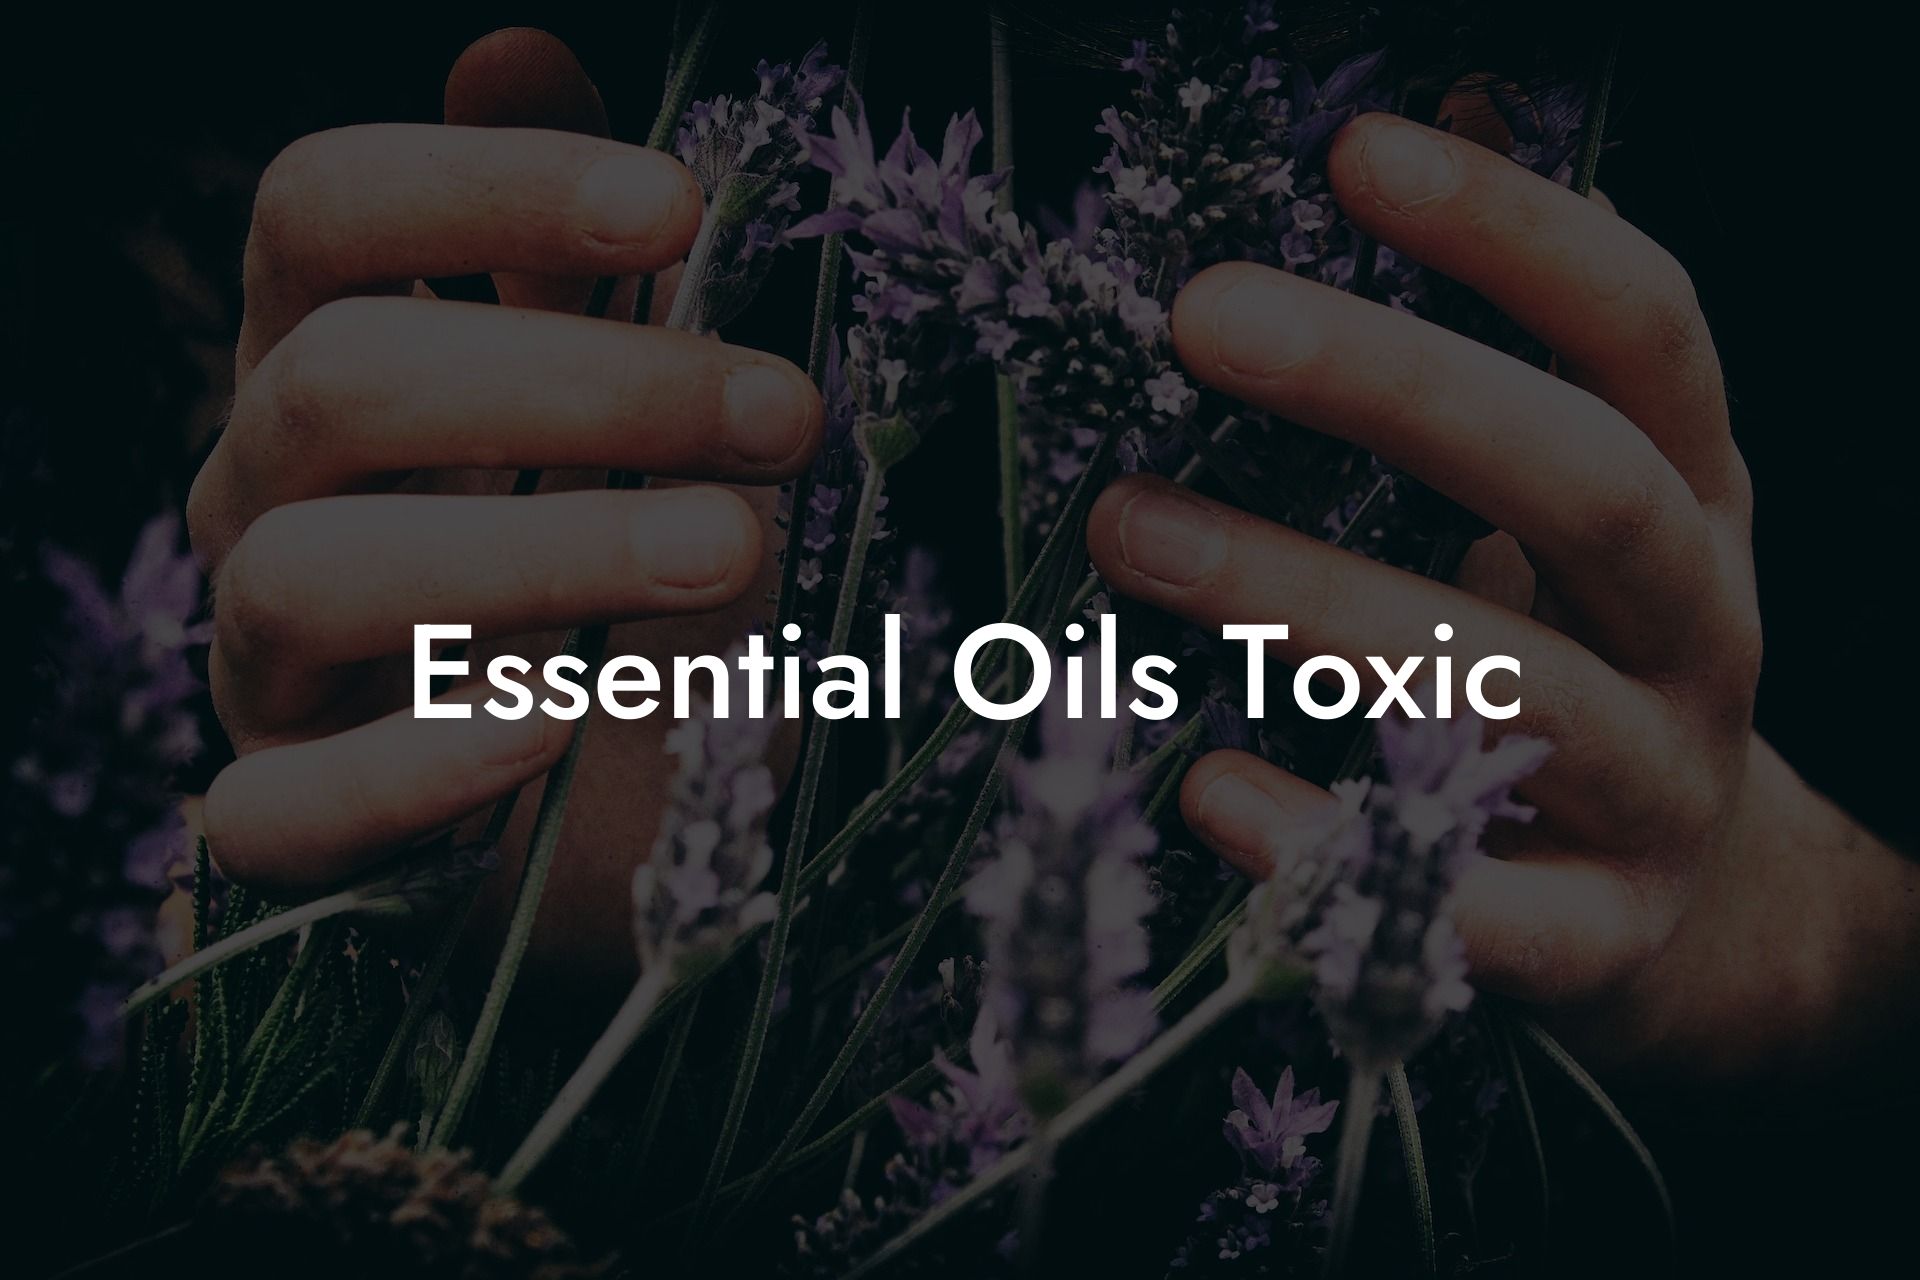 Essential Oils Toxic